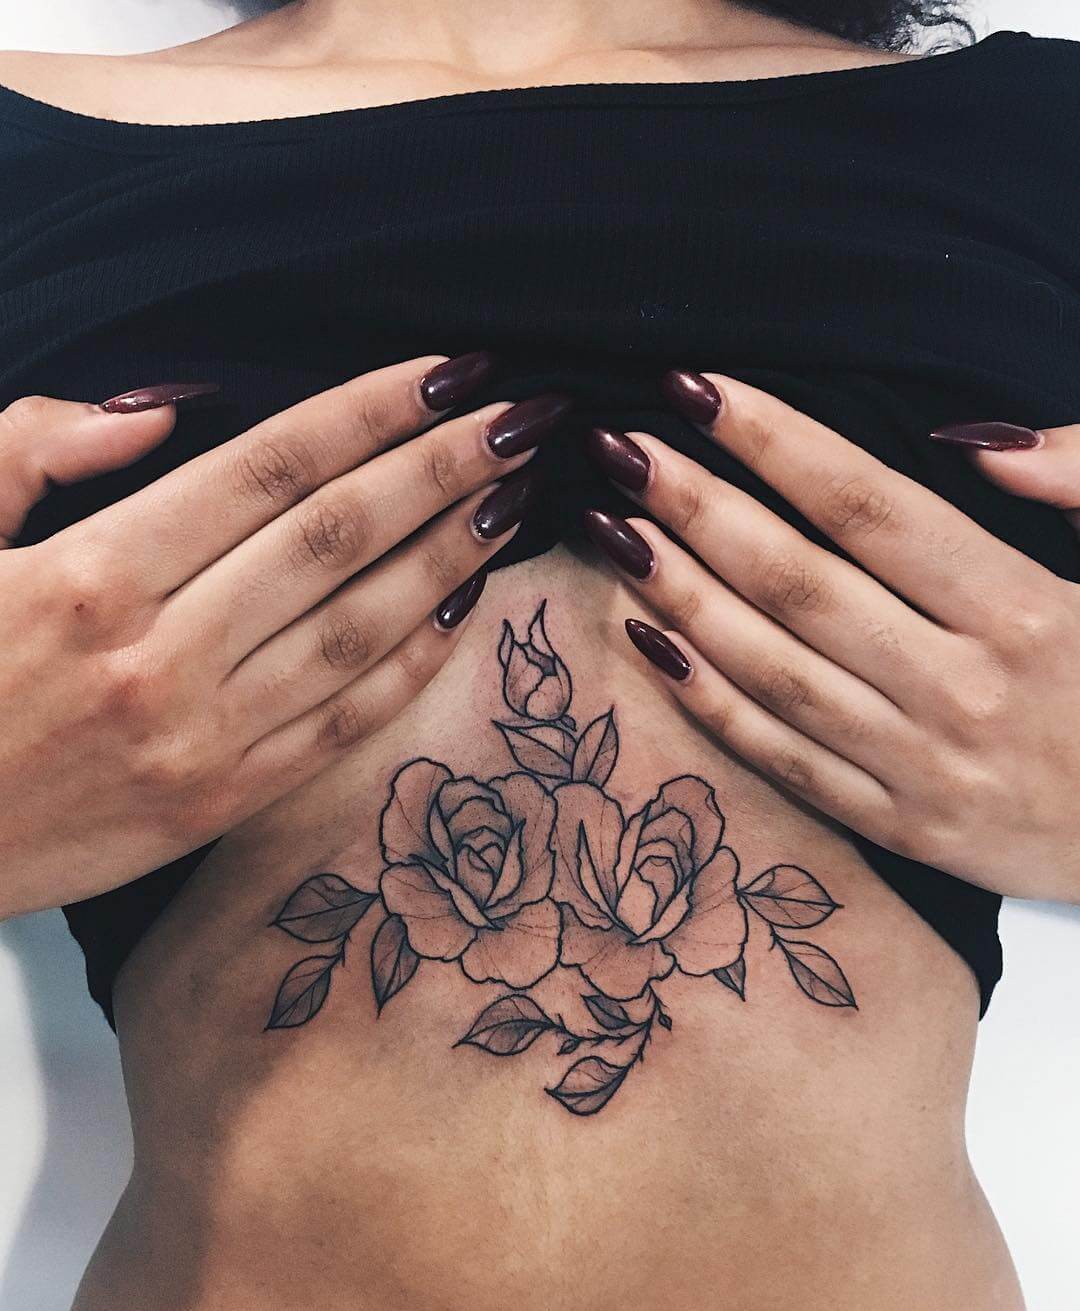 Underboob rose tattoo by marlonb_tatts